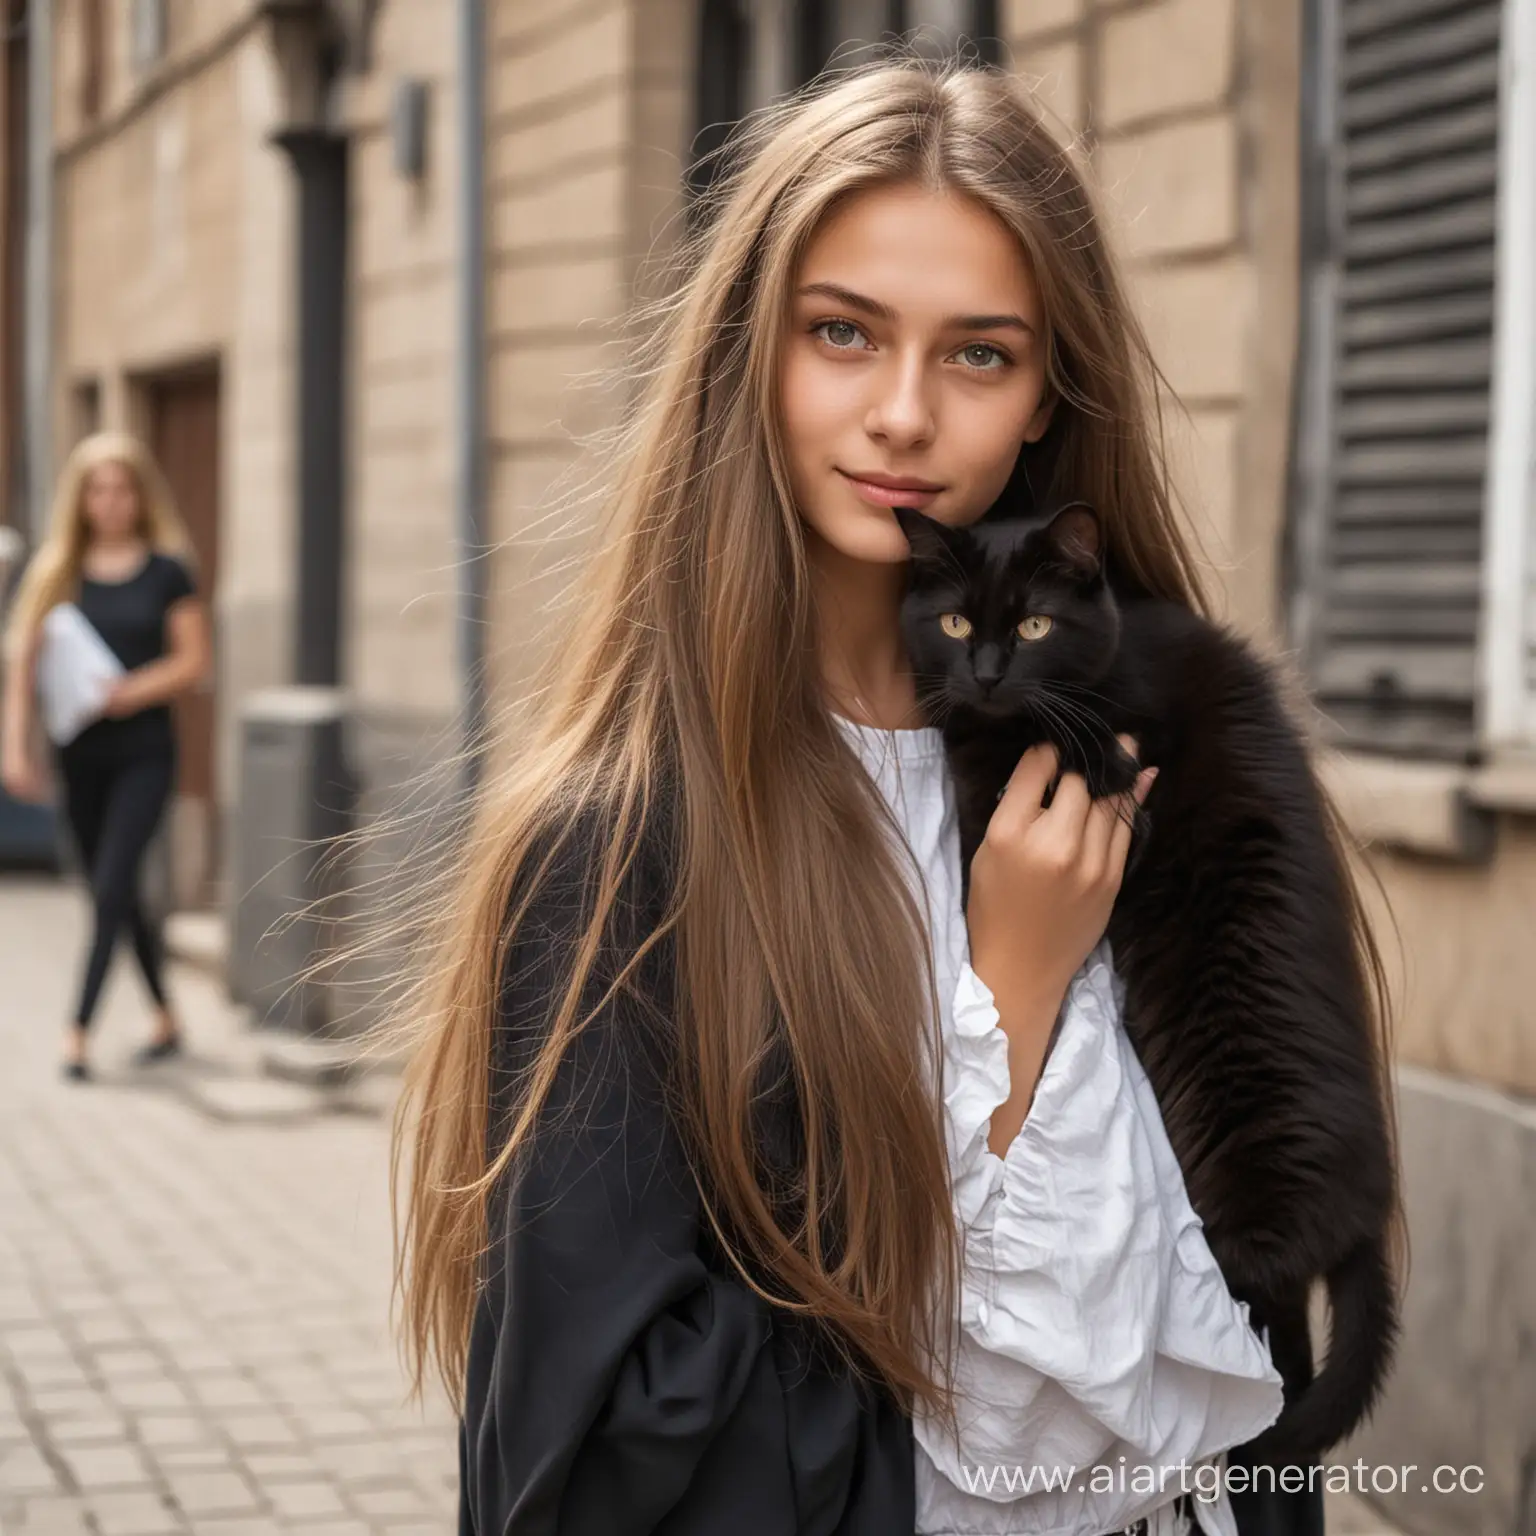 русско-еврейская по национальности девушка на улице летом, высокая, худая, длинные светло-русые волосы со светлыми концами, светло-серые глаза, рядом черный кот 